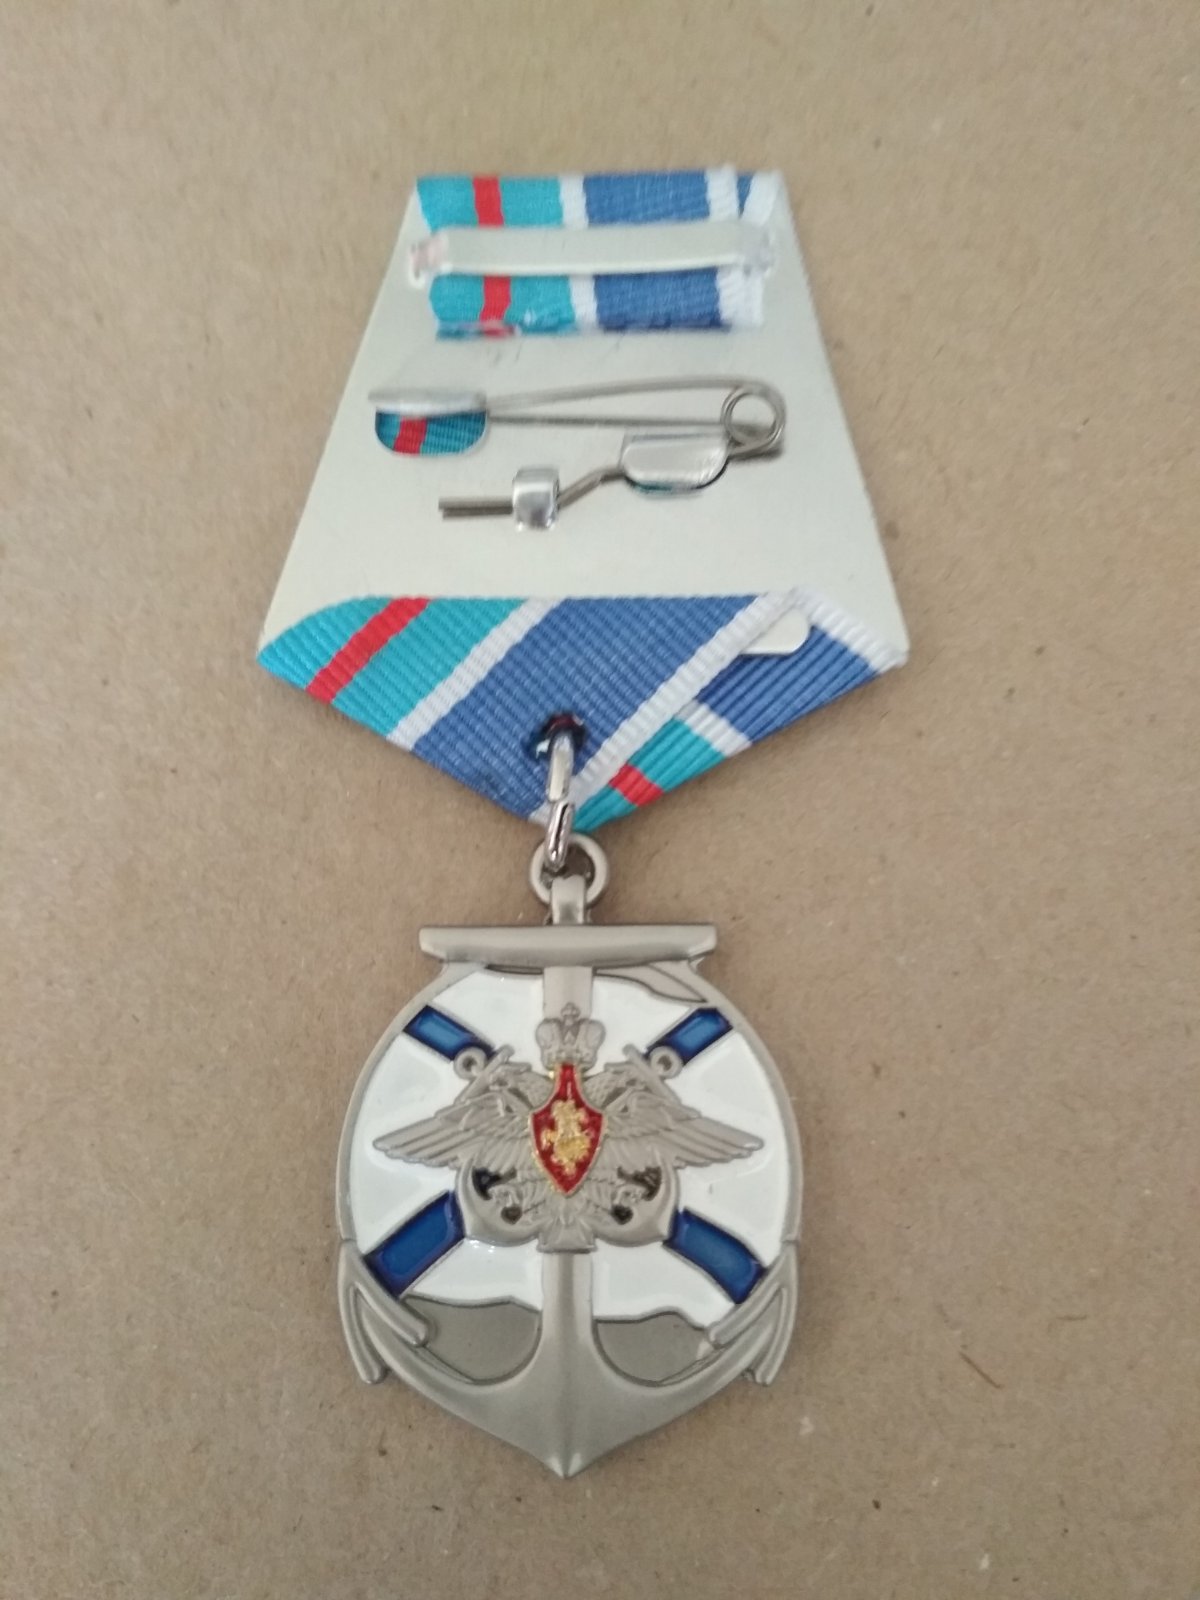 Памятная медаль "В память о службе на тяжёлом авианесущем крейсере "Адмирал Кузнецов"